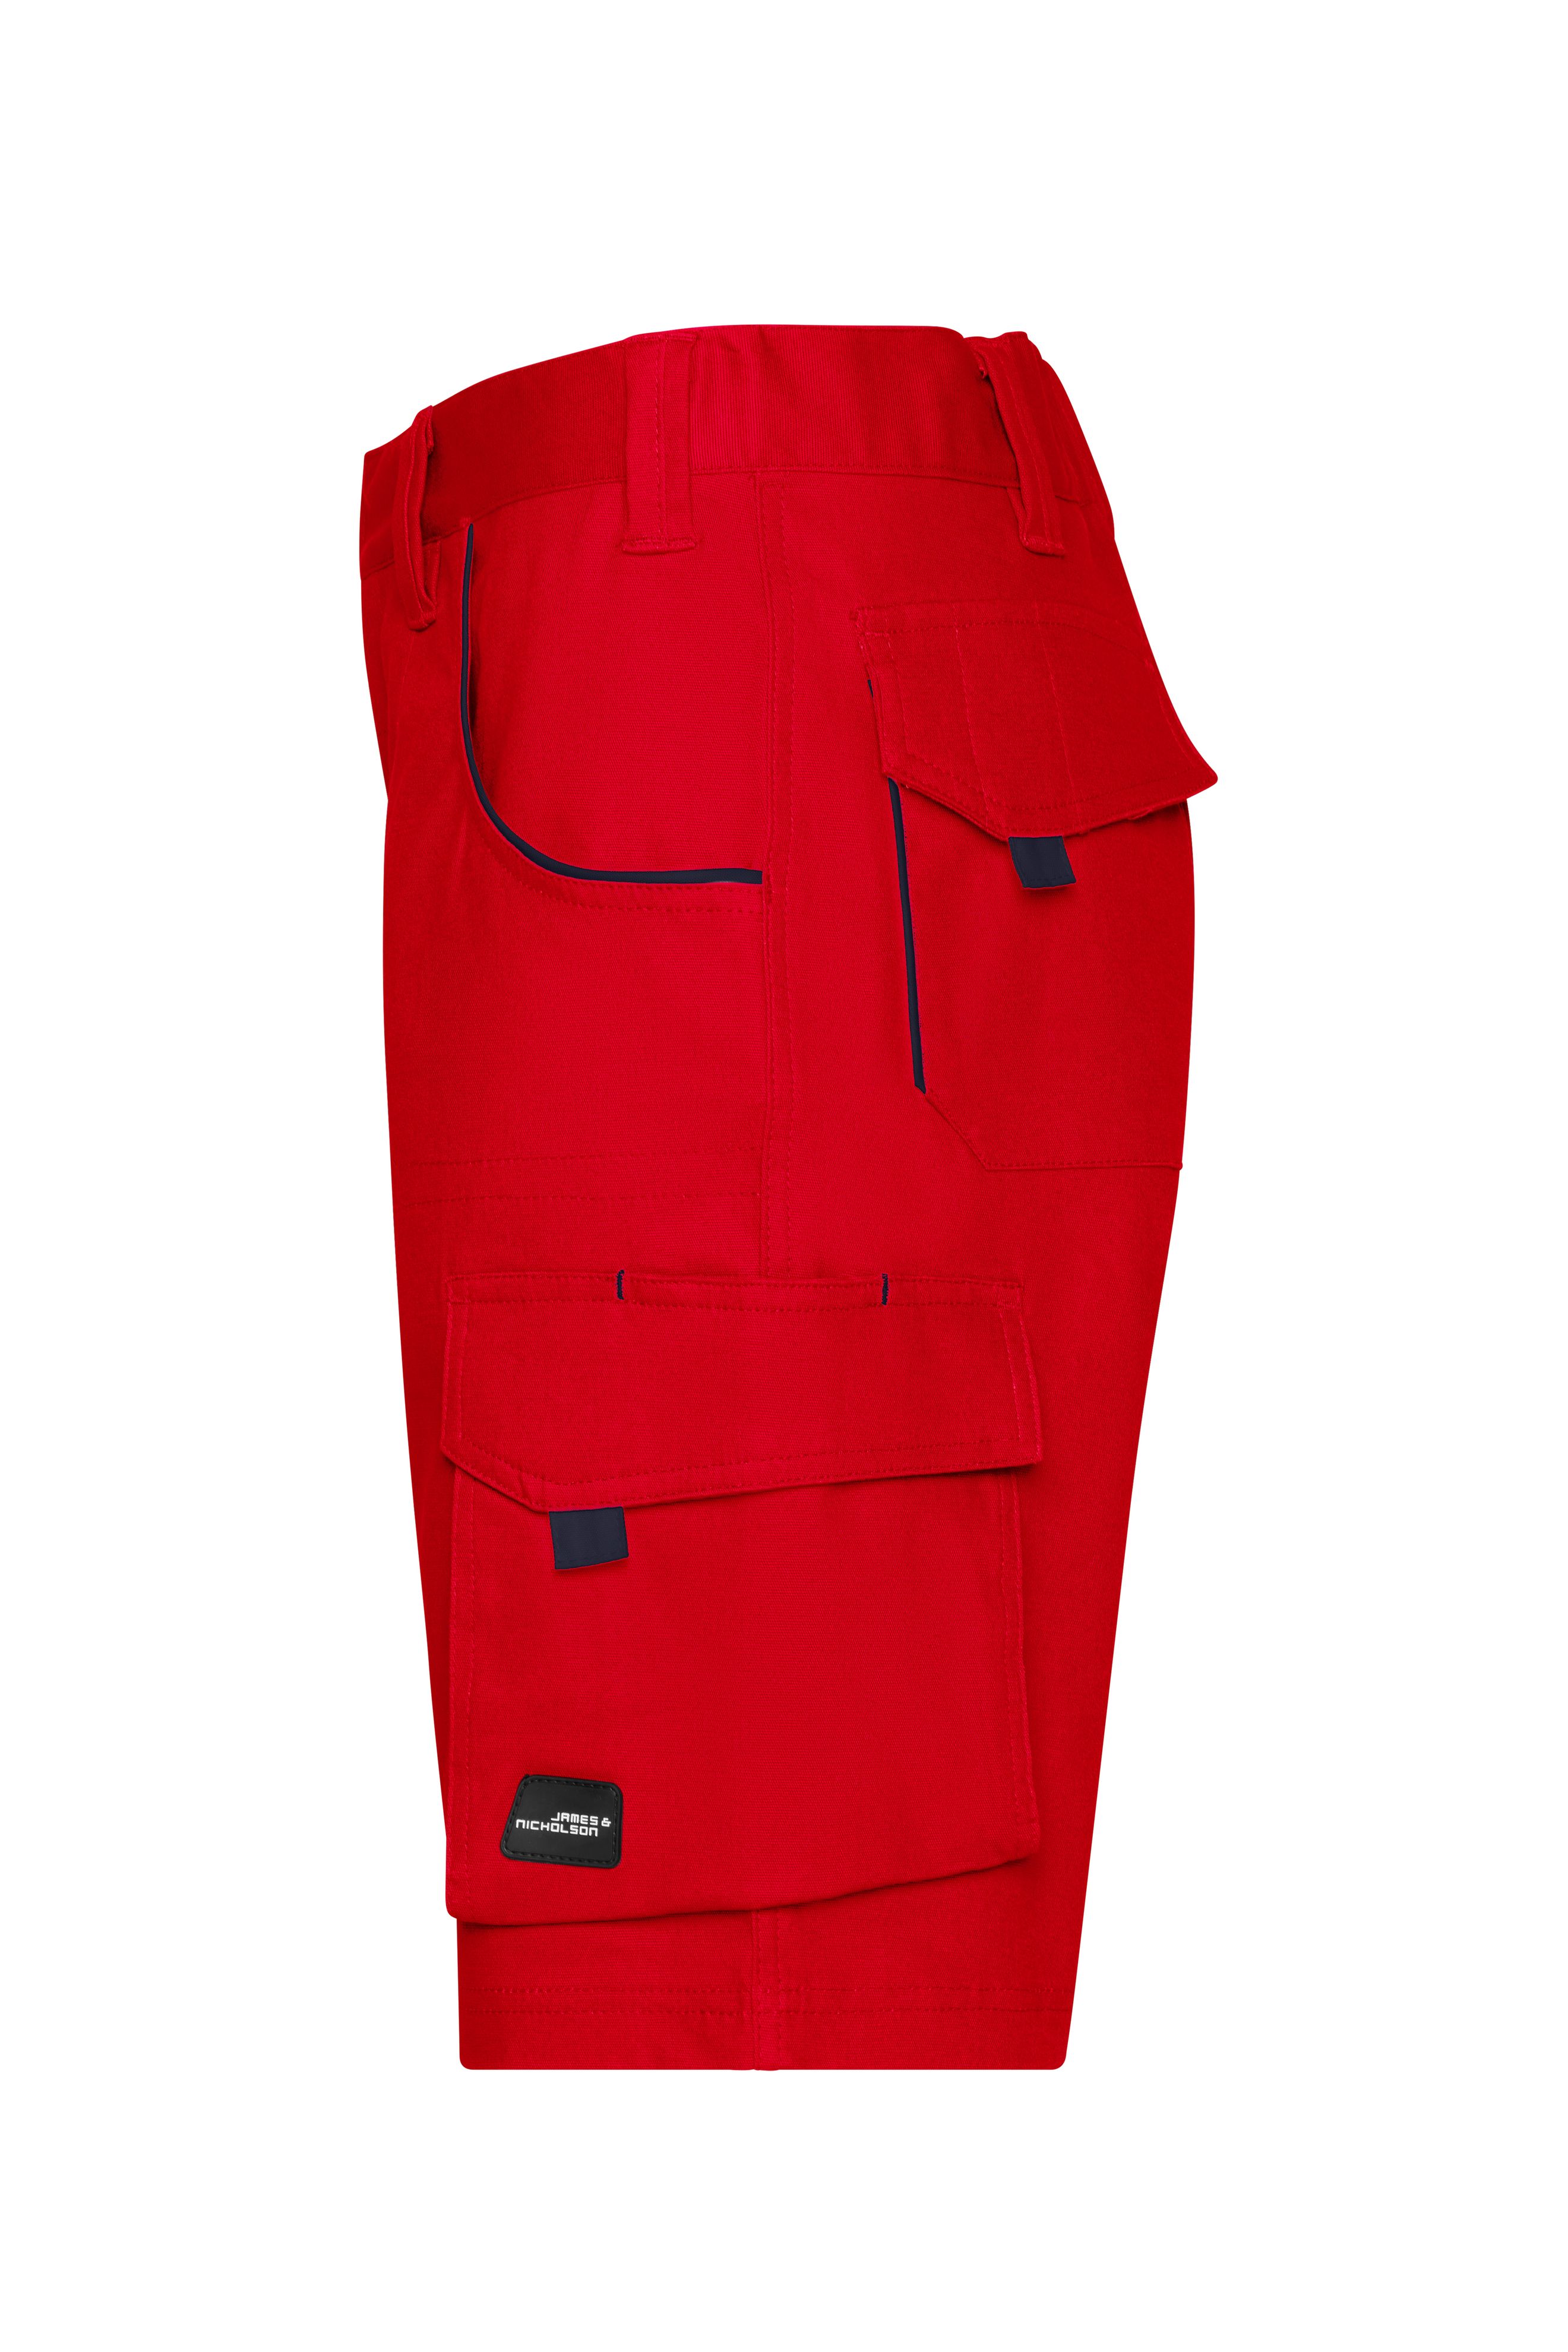 Workwear Bermudas - COLOR - JN872 Funktionelle kurze Hose im sportlichen Look mit hochwertigen Details